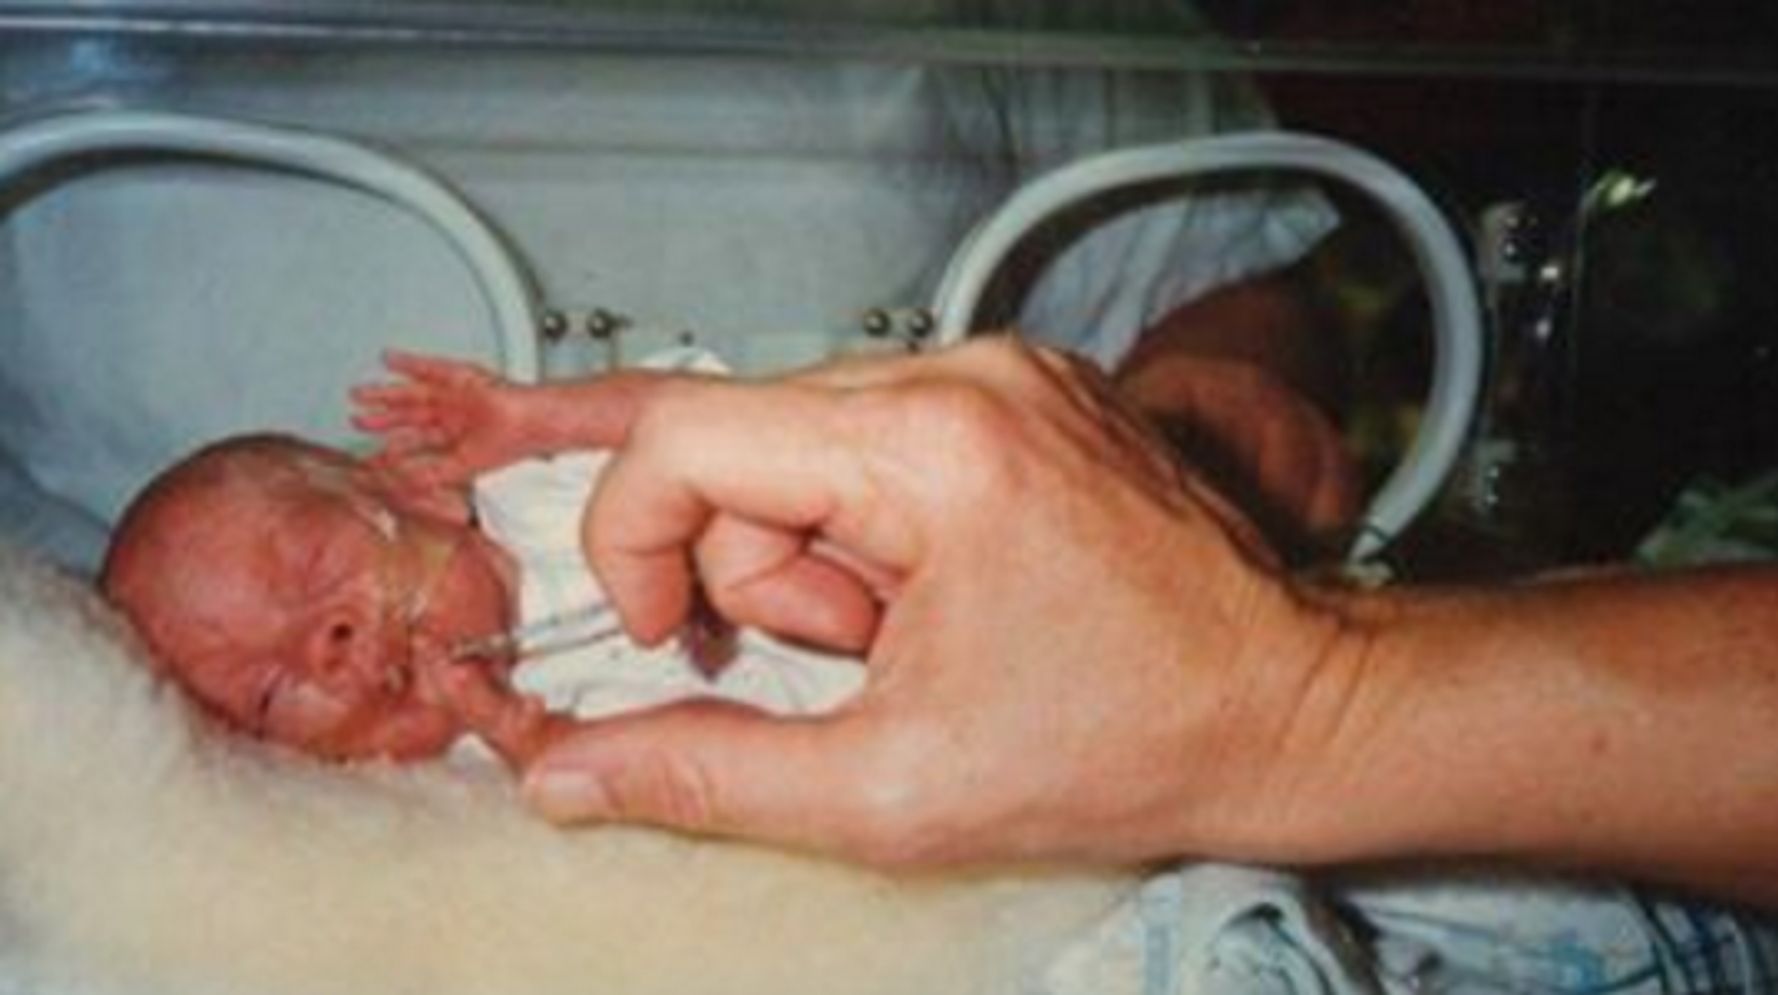 babies born at 15 weeks